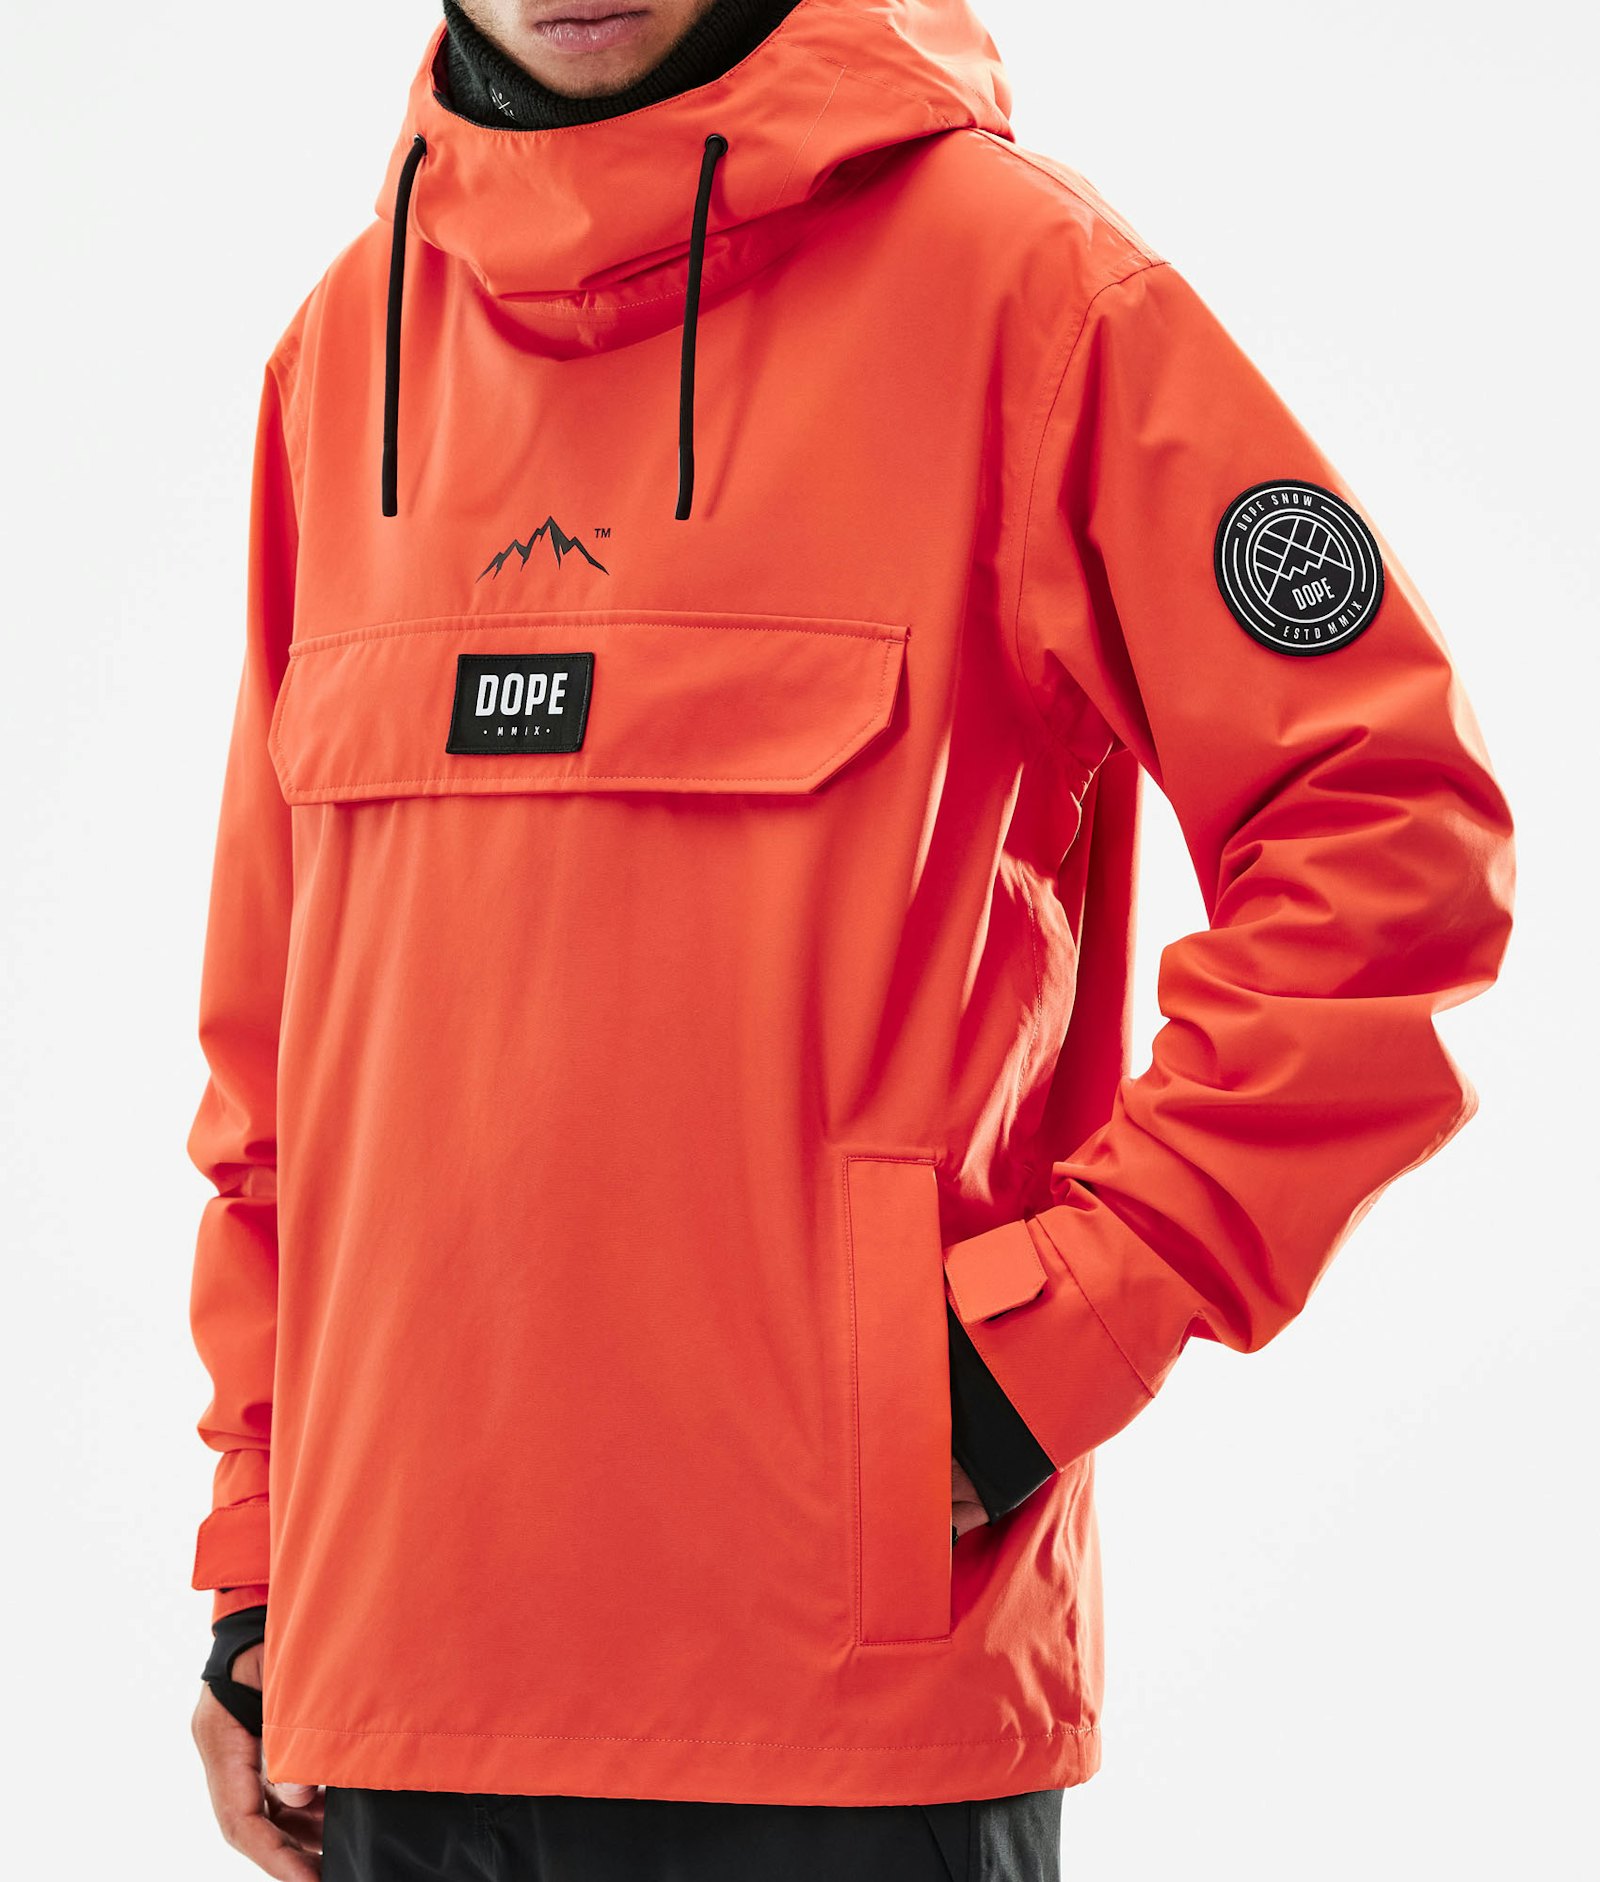 Chaqueta esquí hombre Storm naranja - Tsunami Skiwear